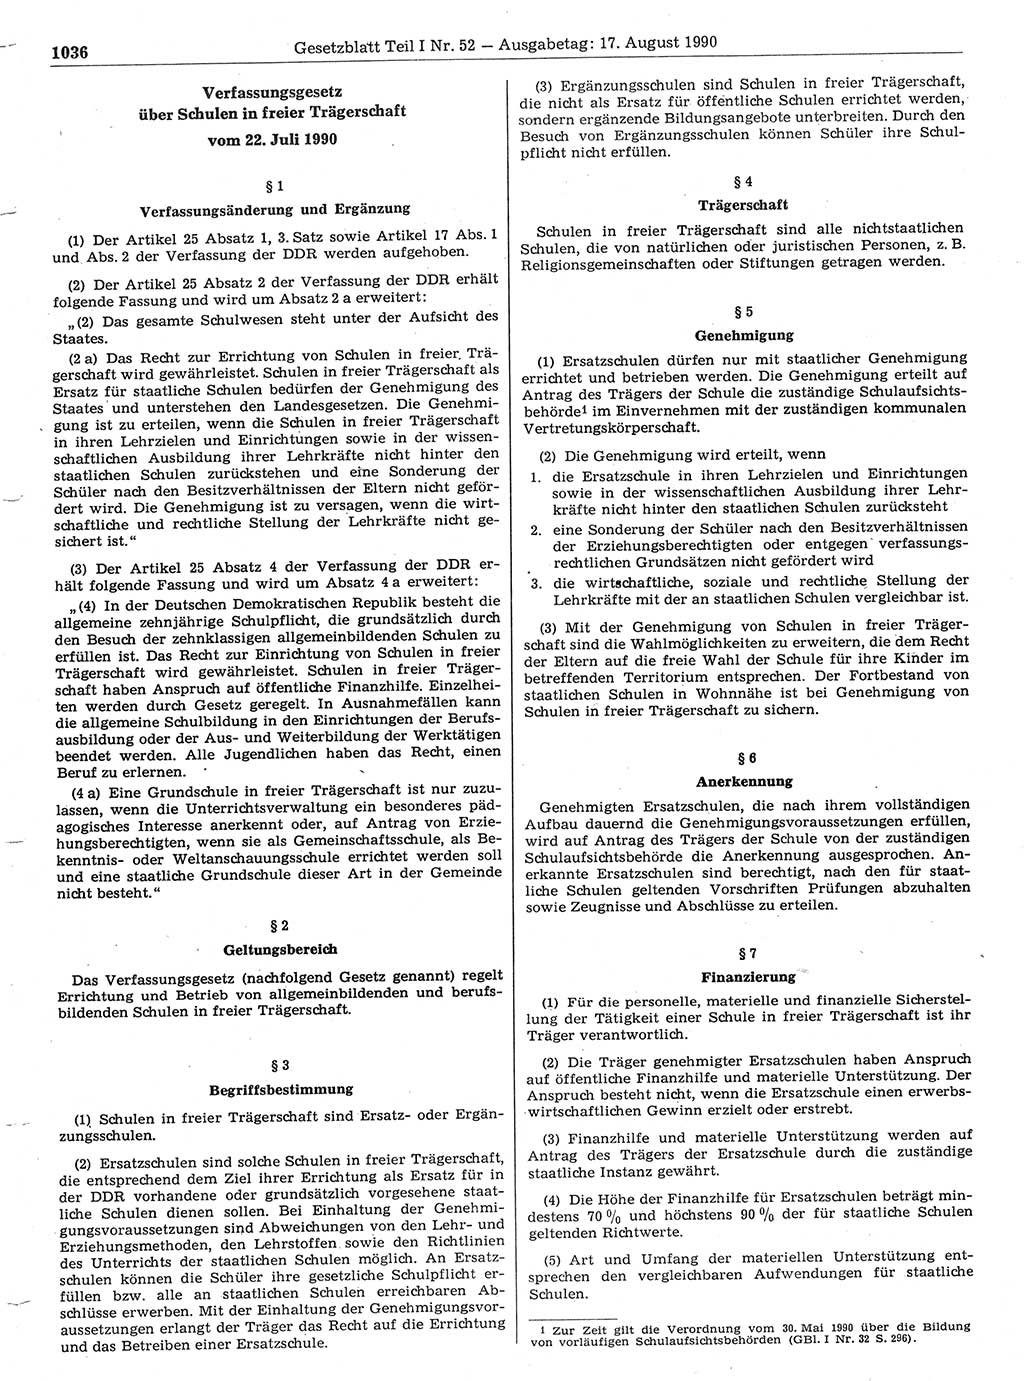 Gesetzblatt (GBl.) der Deutschen Demokratischen Republik (DDR) Teil Ⅰ 1990, Seite 1036 (GBl. DDR Ⅰ 1990, S. 1036)